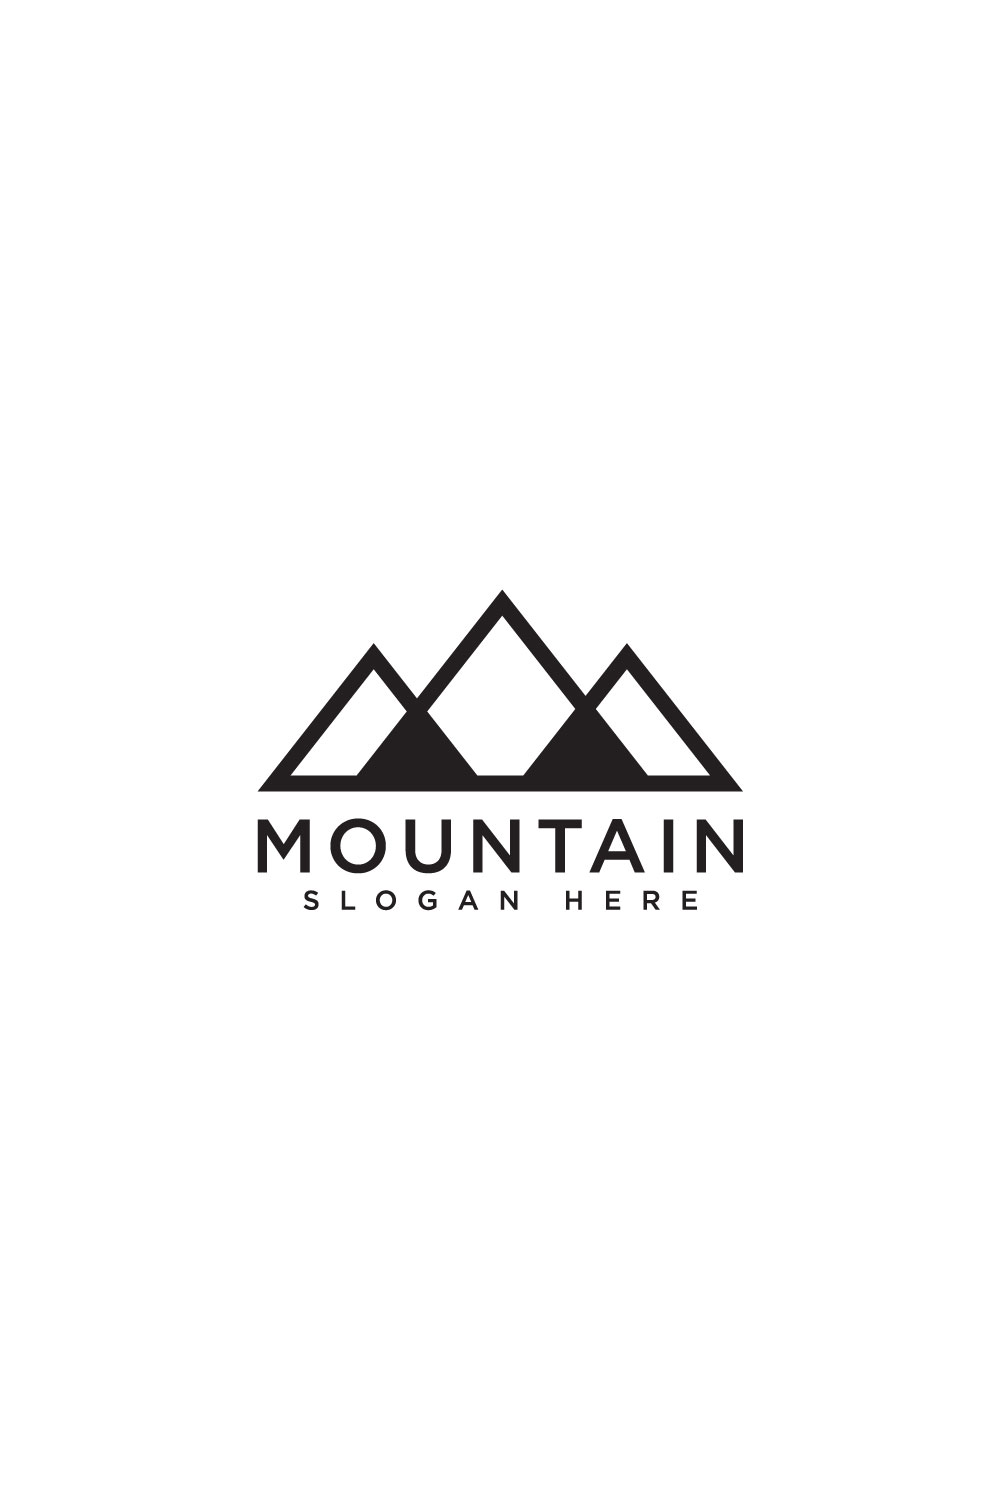 mountain logo vector design - MasterBundles